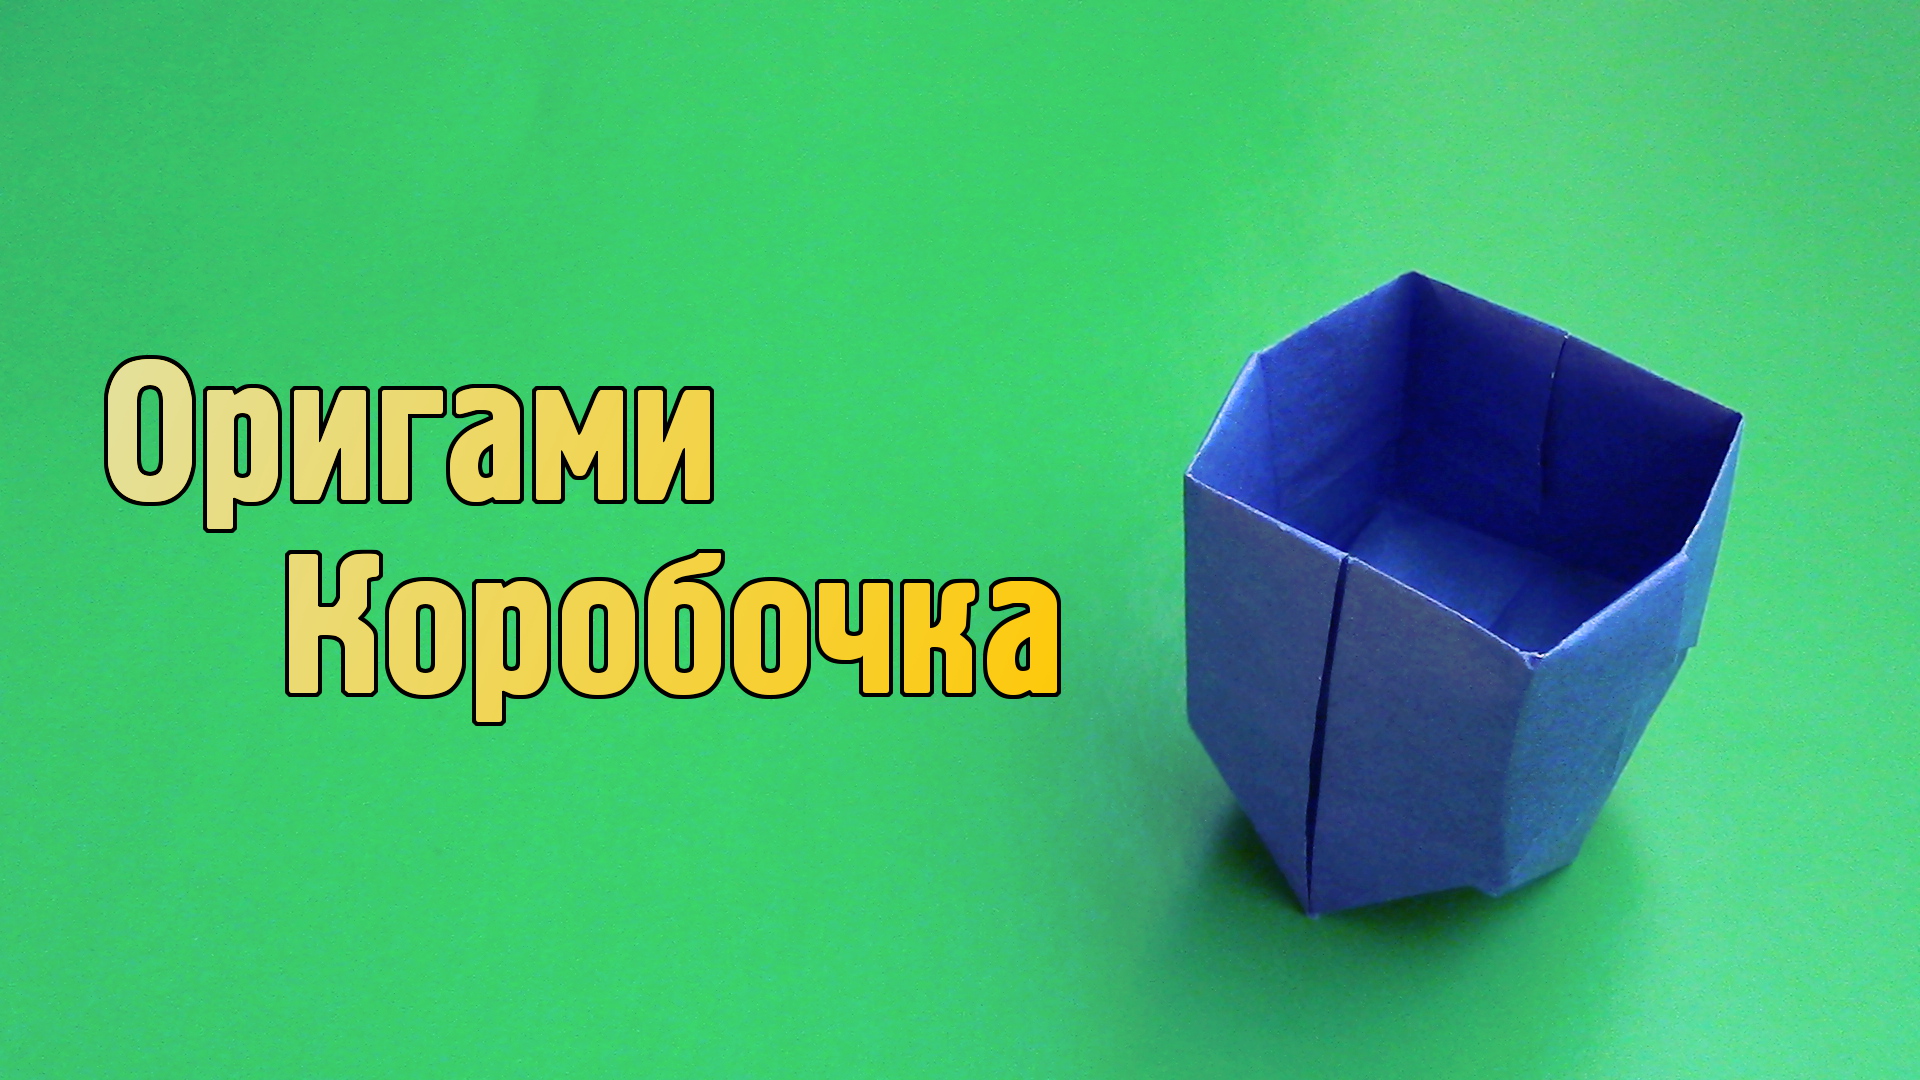 Как сделать Коробочку из бумаги А4 без клея | Бумажная Оригами Коробка своими руками для детей